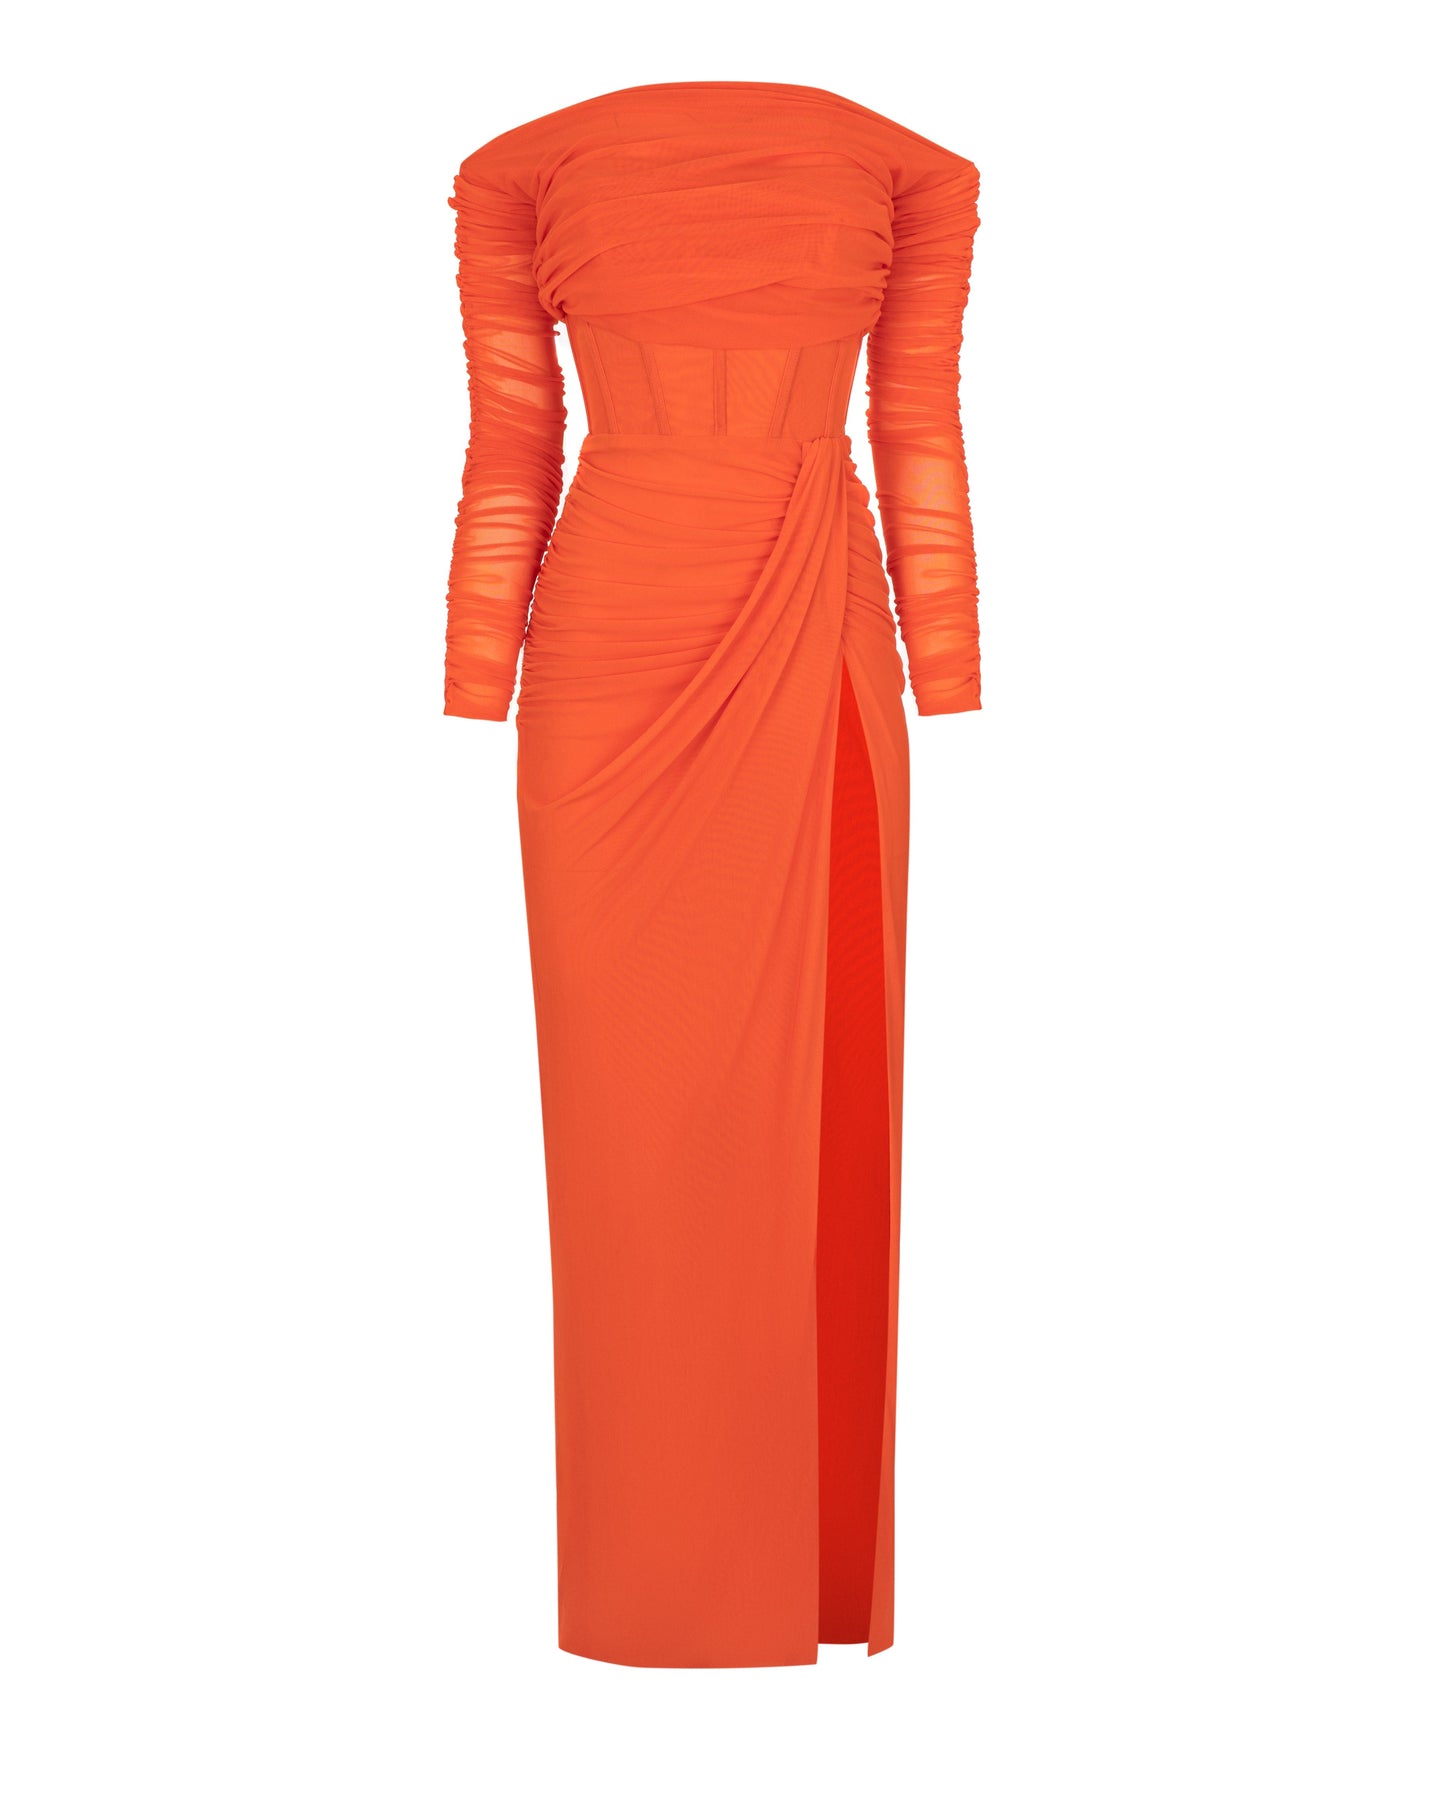 Coral blazing off-the-shoulder maxi dress Milla Dresses - USA ...